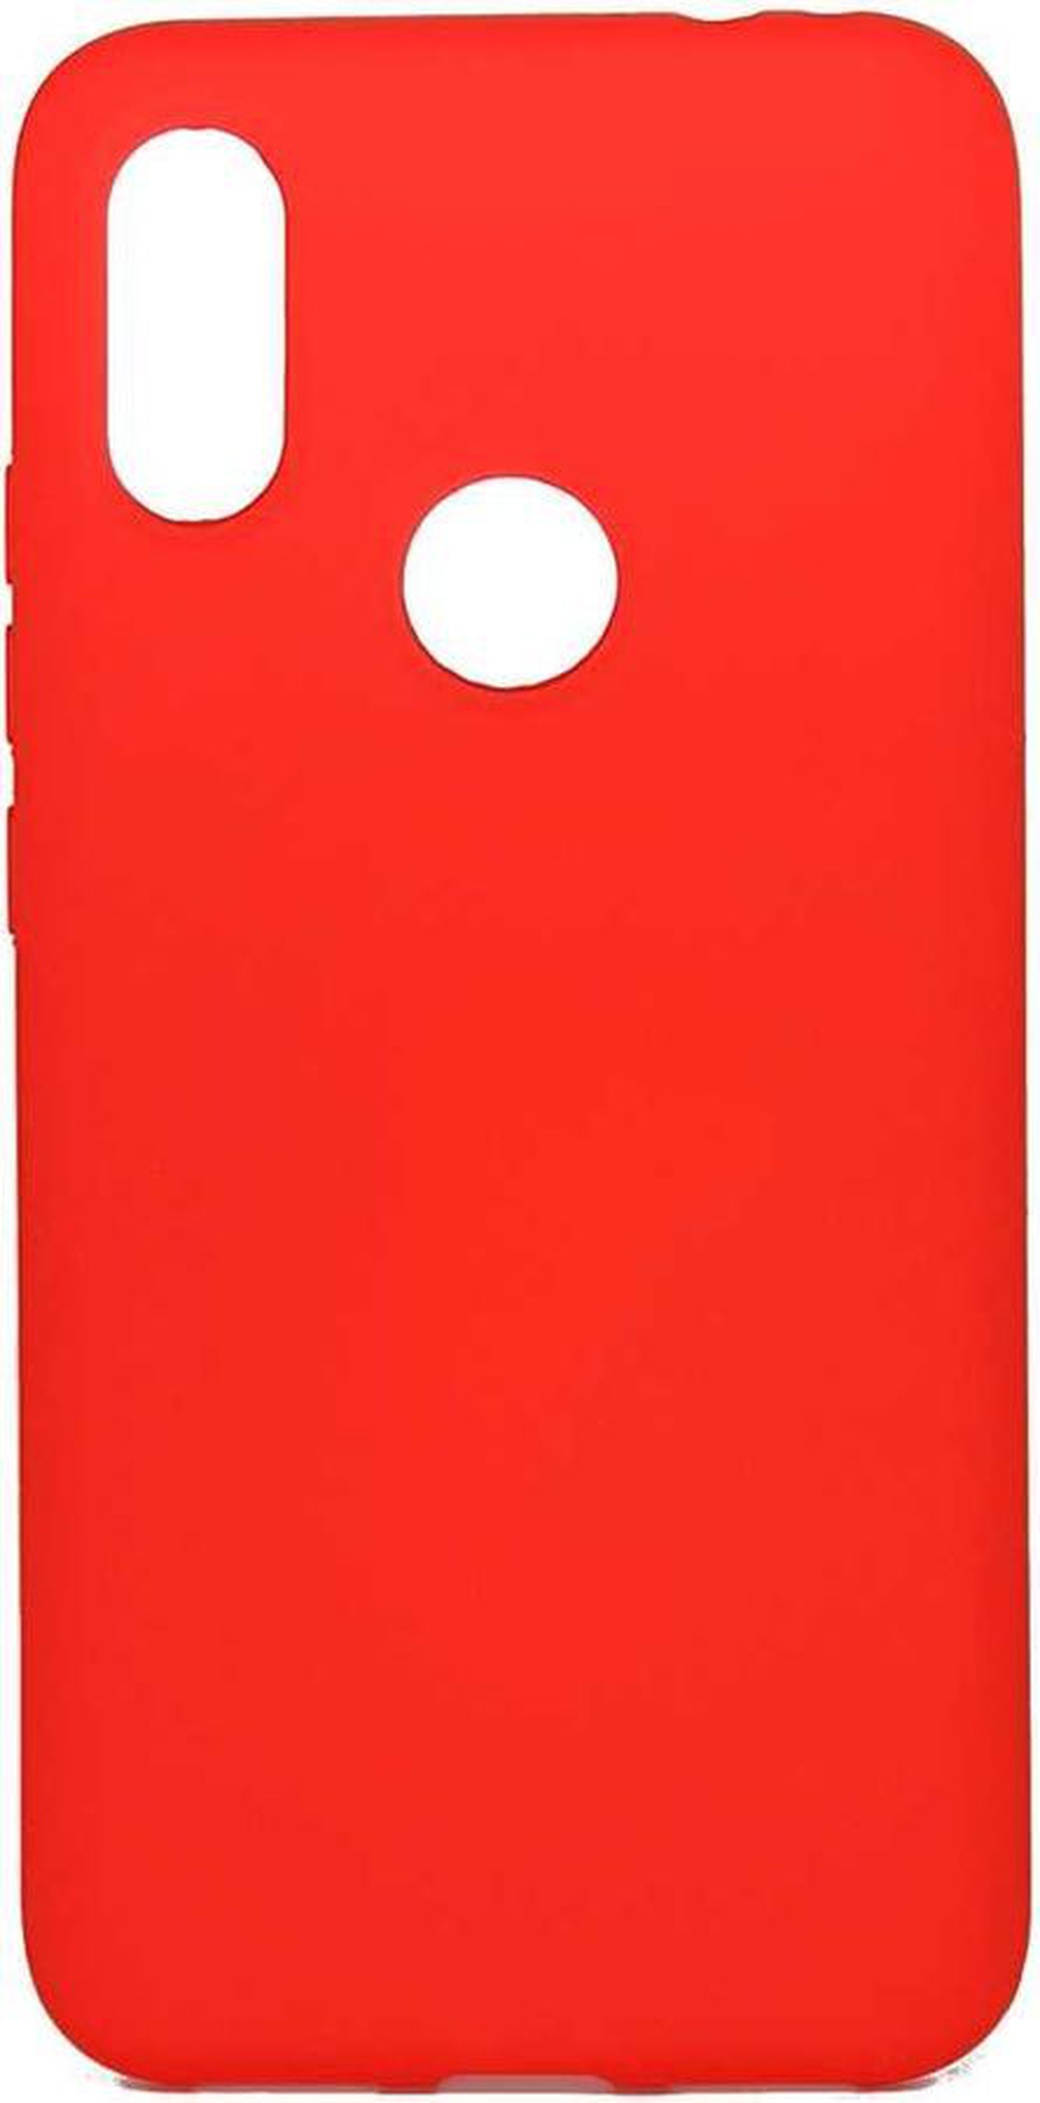 Чехол-накладка Hard Case для Xiaomi Redmi 7 красный, Borasco фото